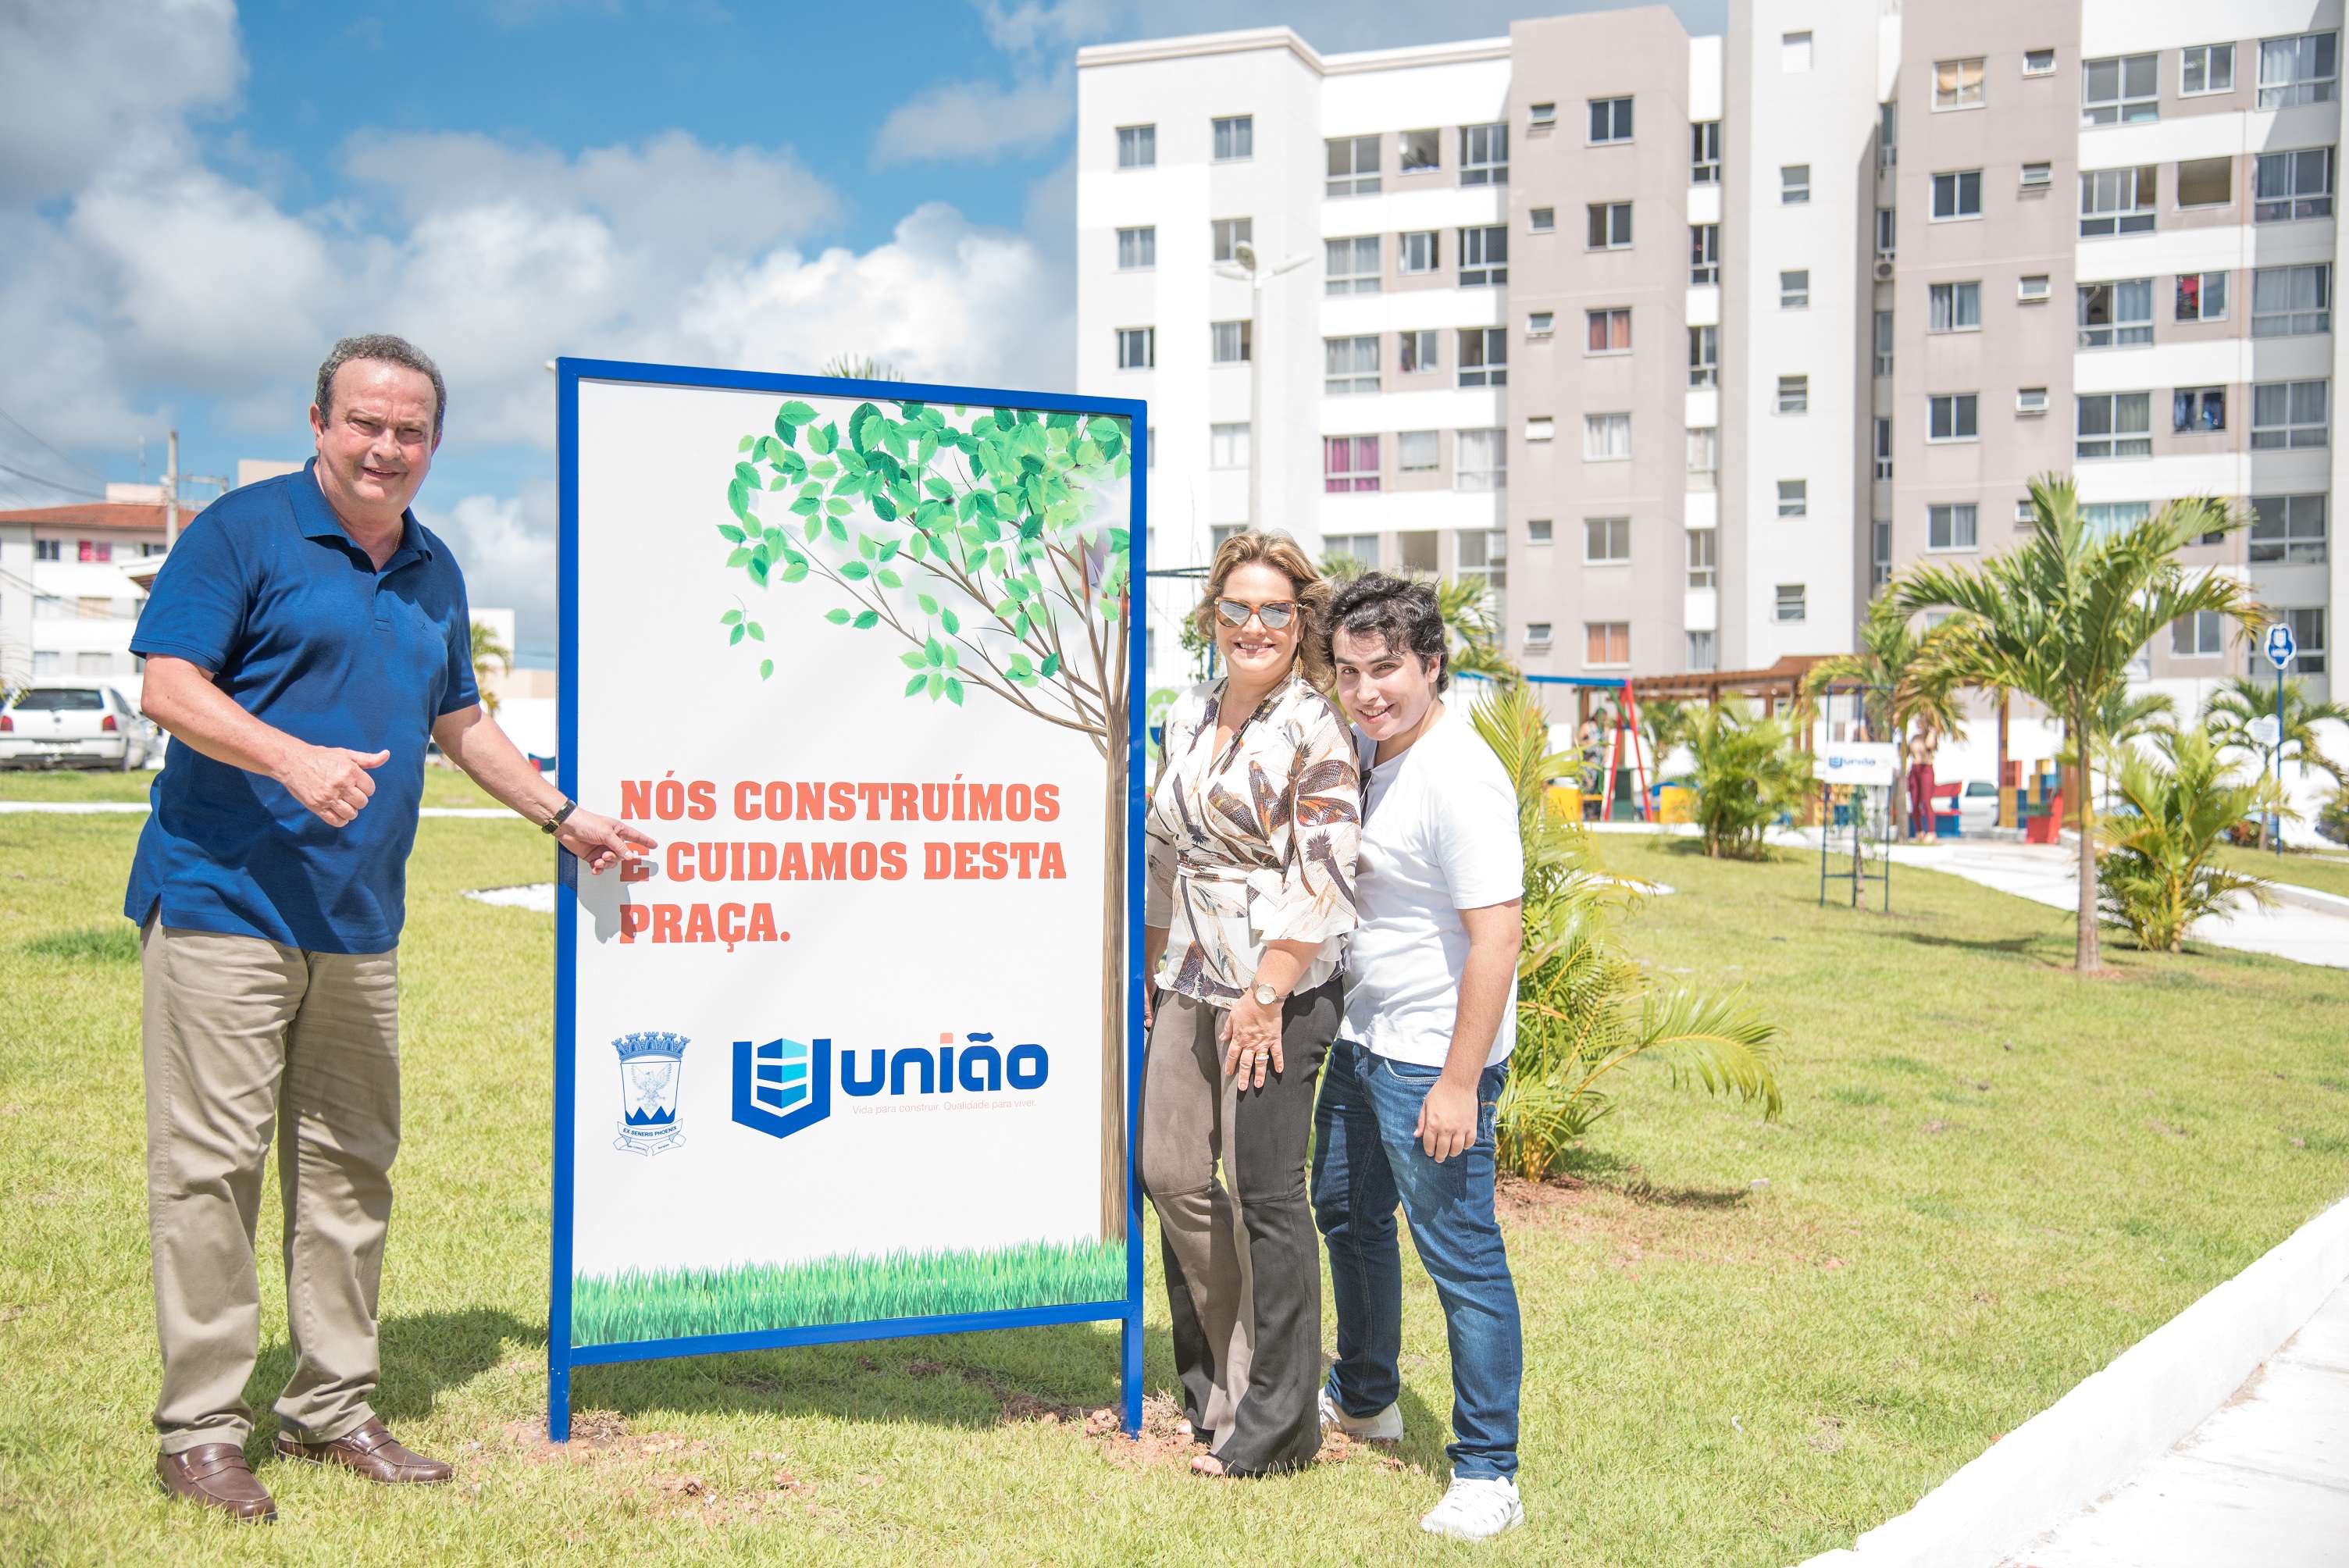 diretor-presidente Julio Cesar Silveira e familia na praça construida e mantida pela UJniao.jpg